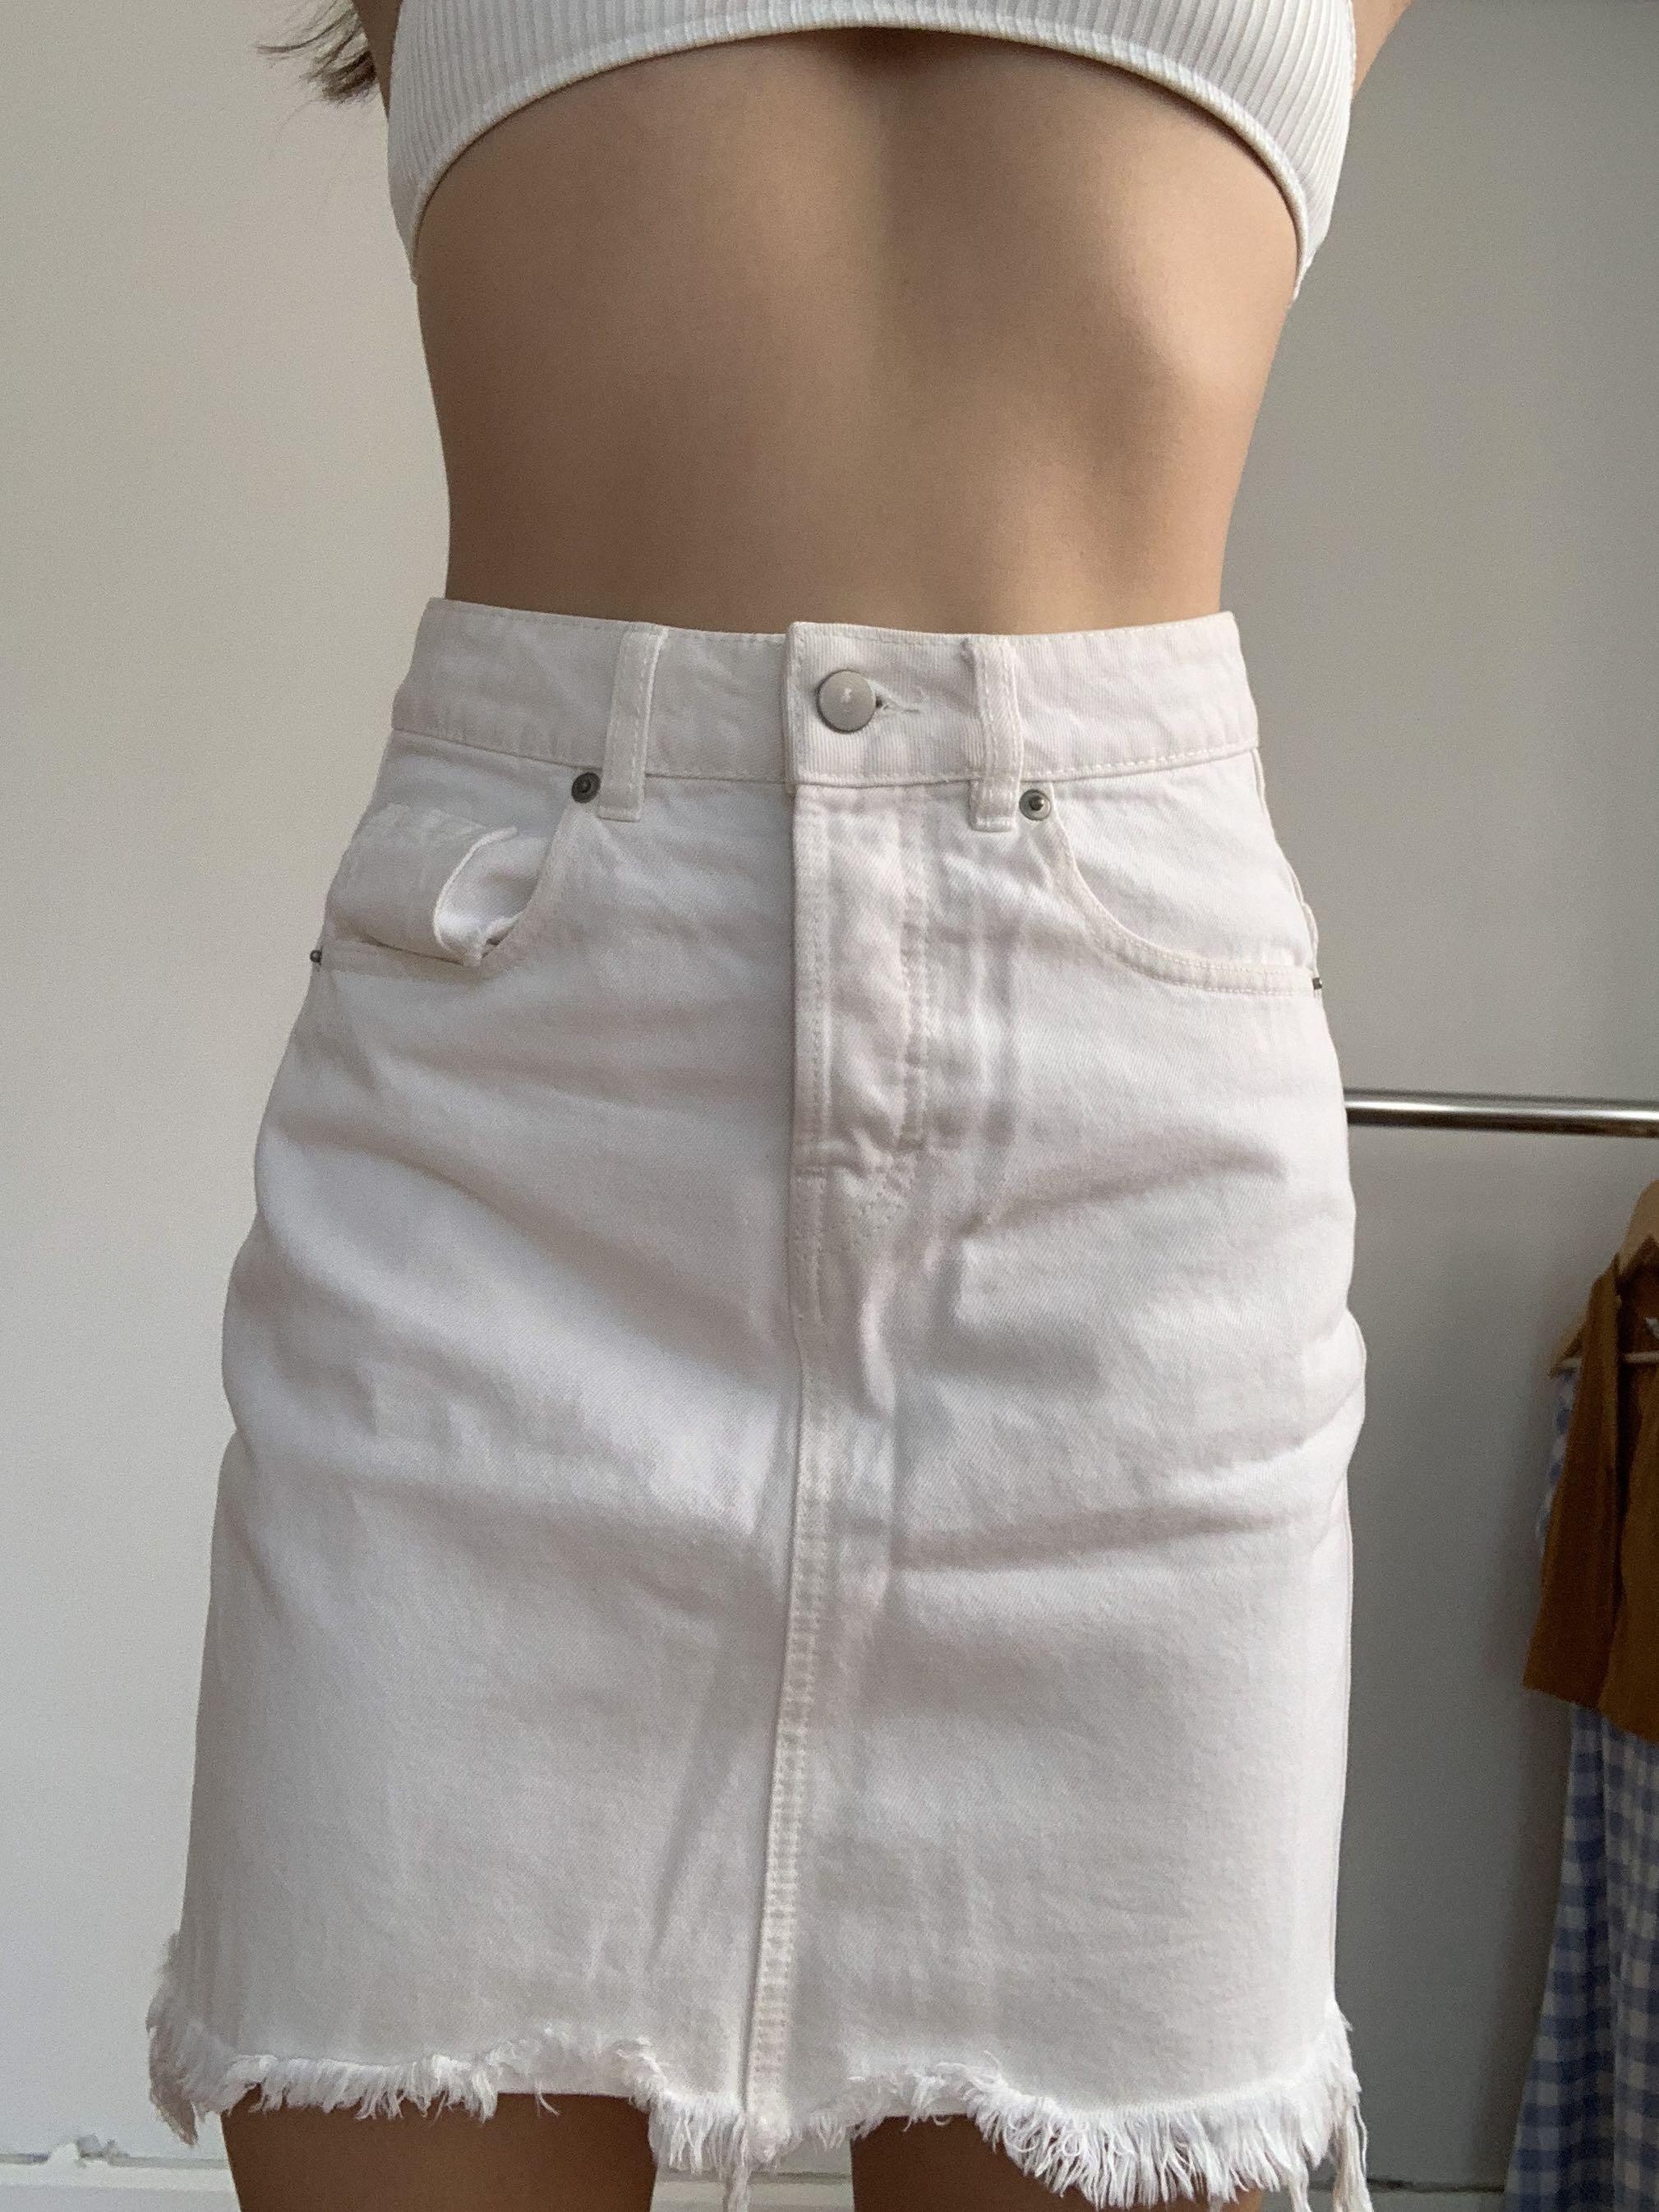 h&m white denim skirt